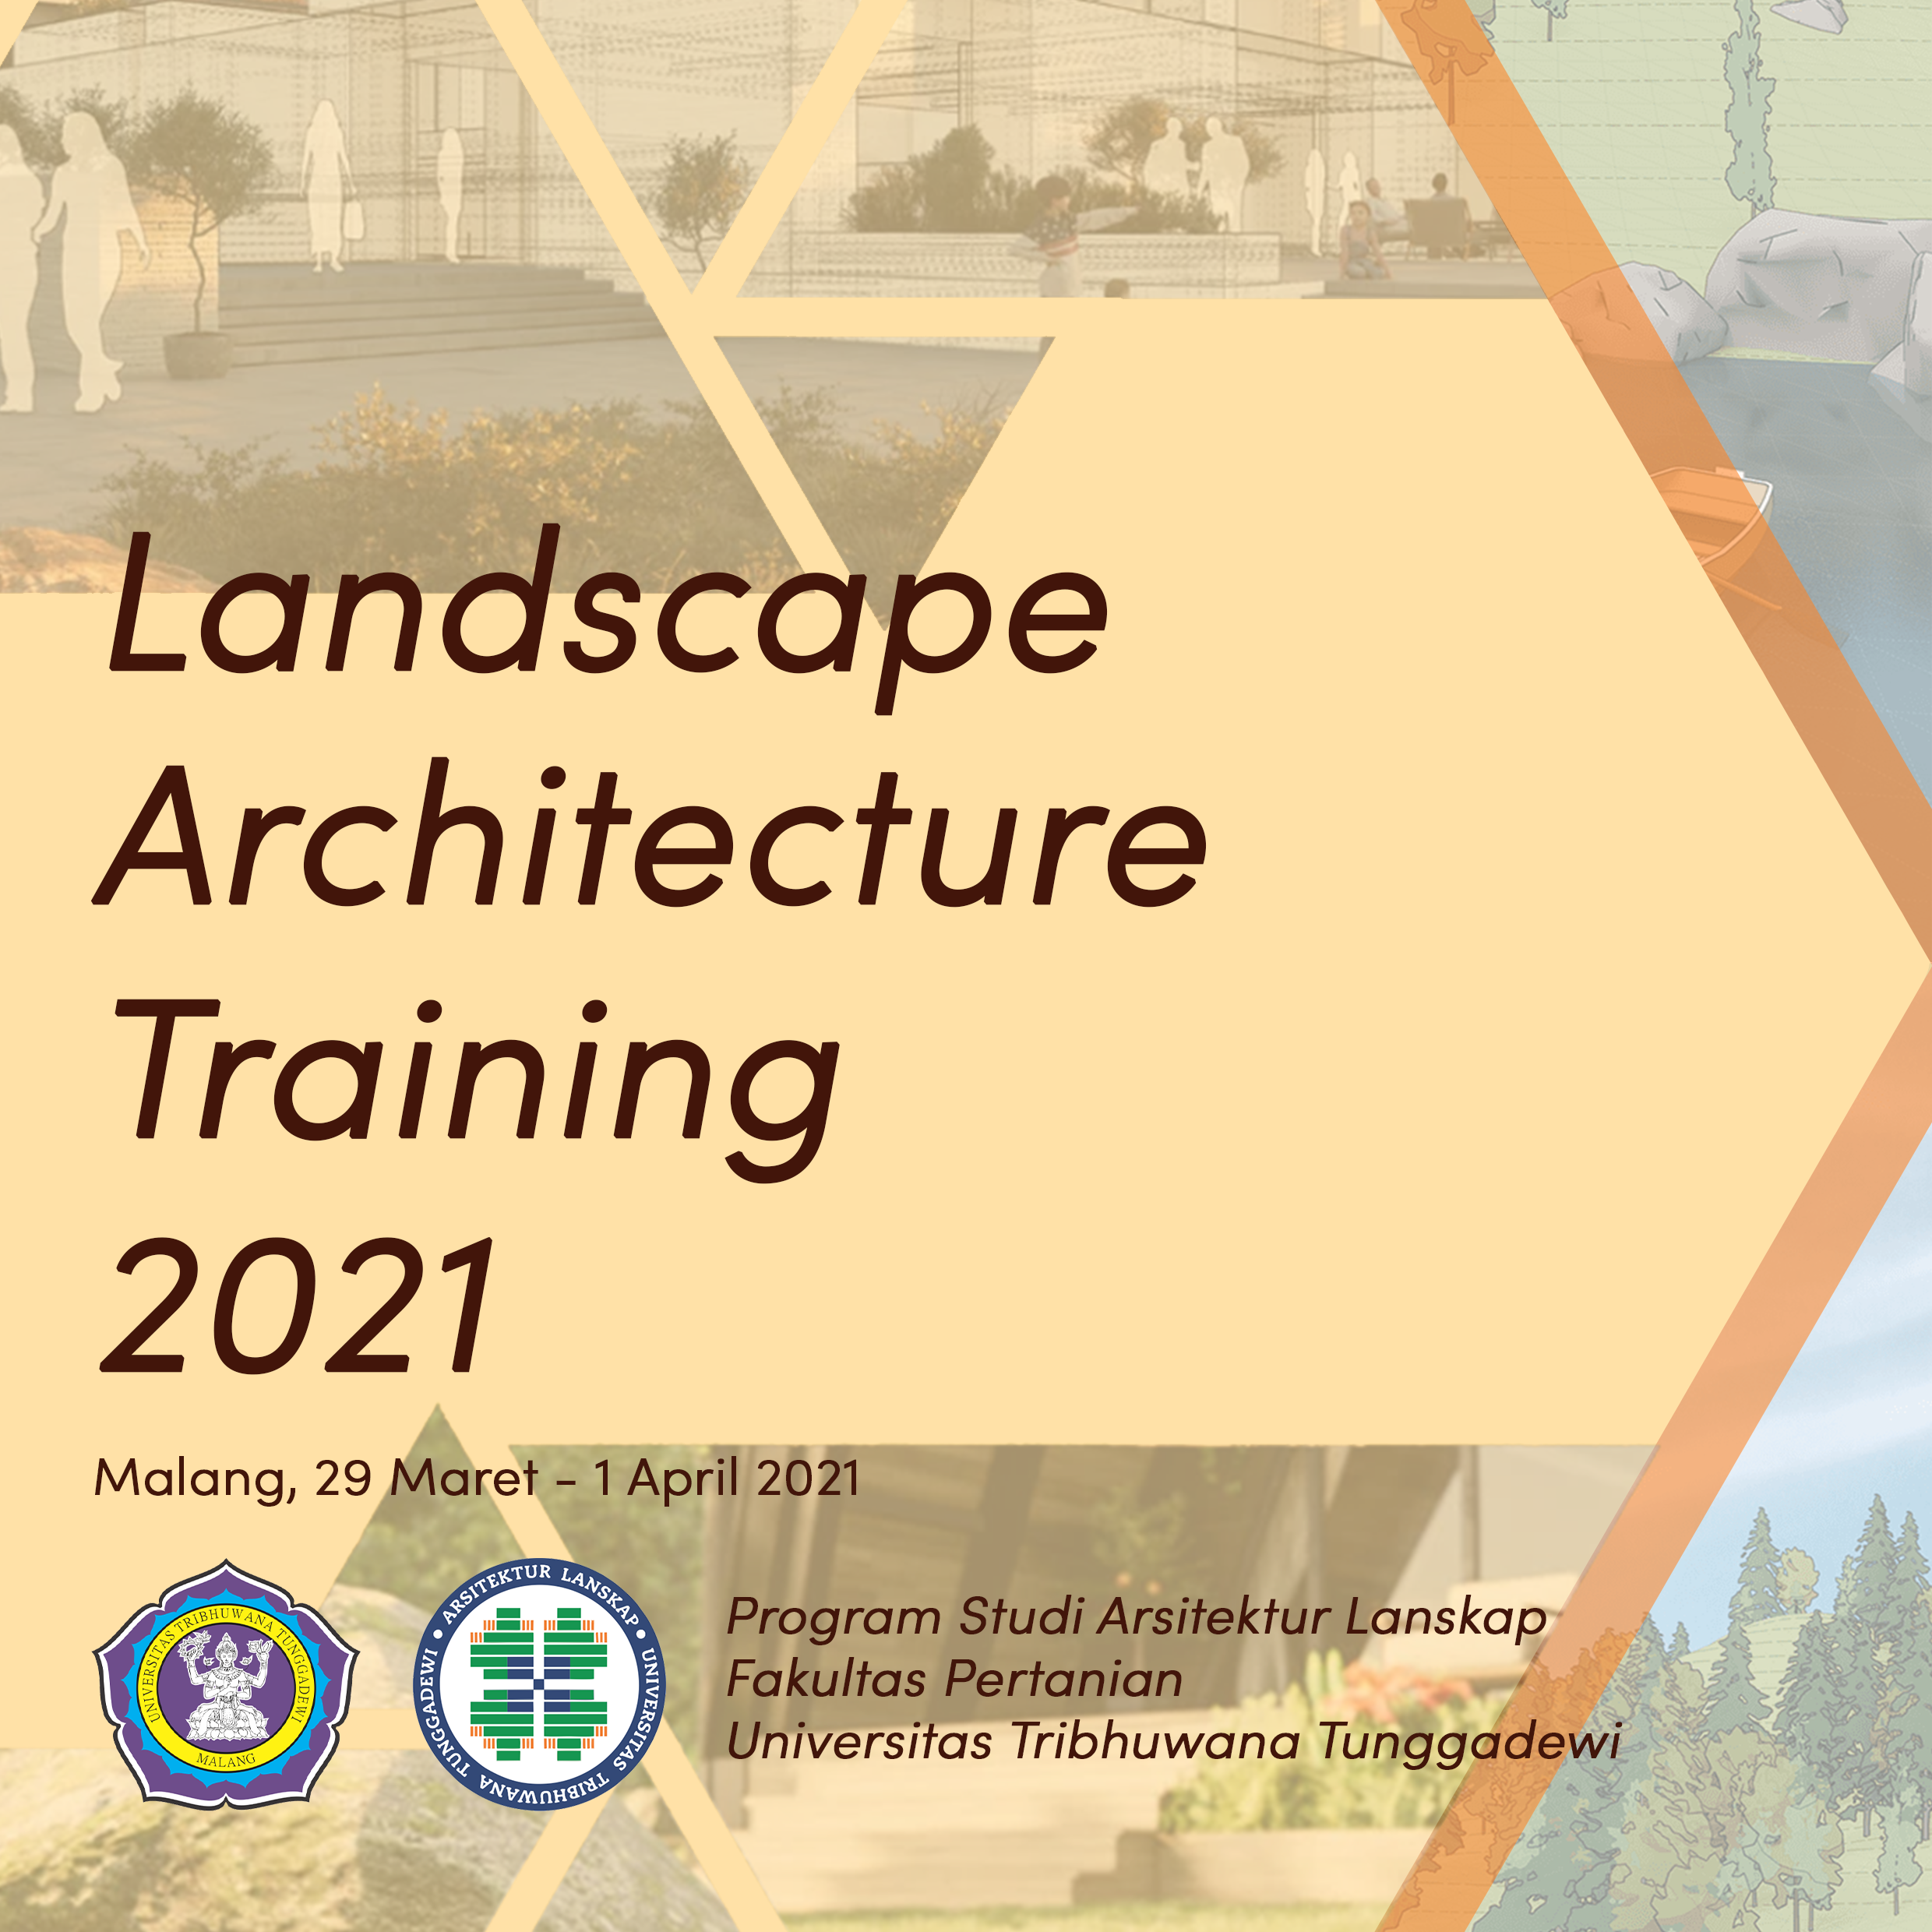 Landscape Architecture Training 2021